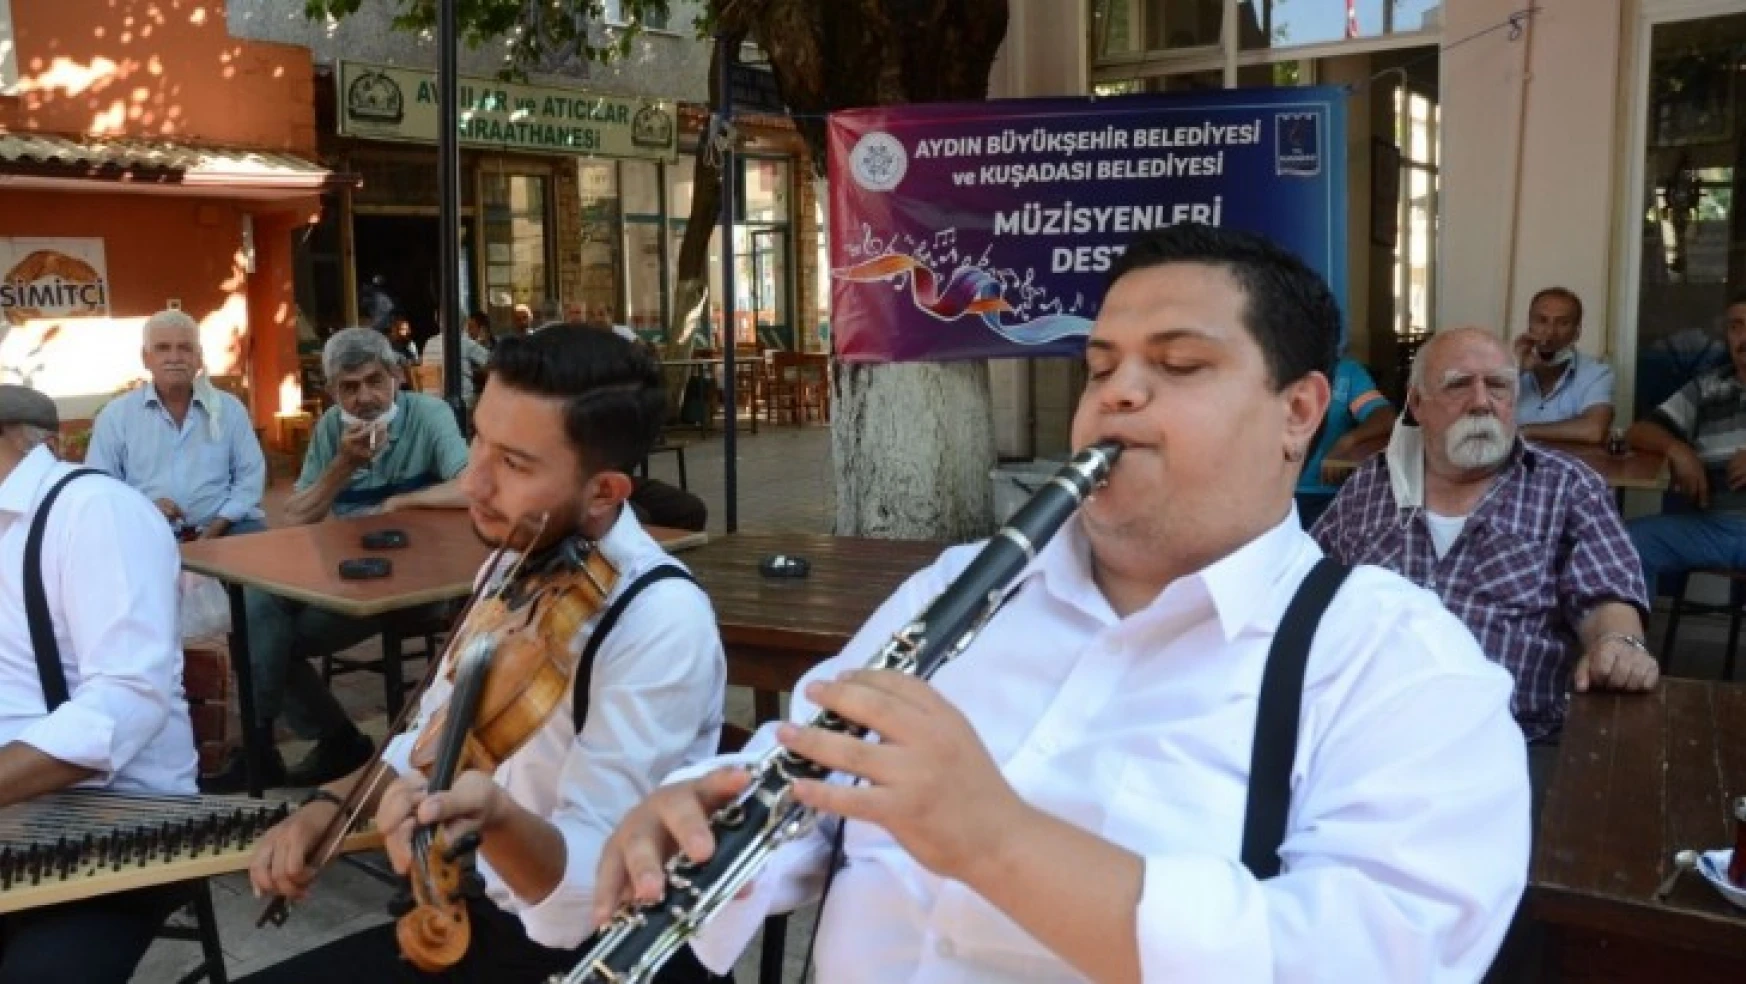 Büyükşehir ve Kuşadası Belediyesi'nden müzisyenlere destek